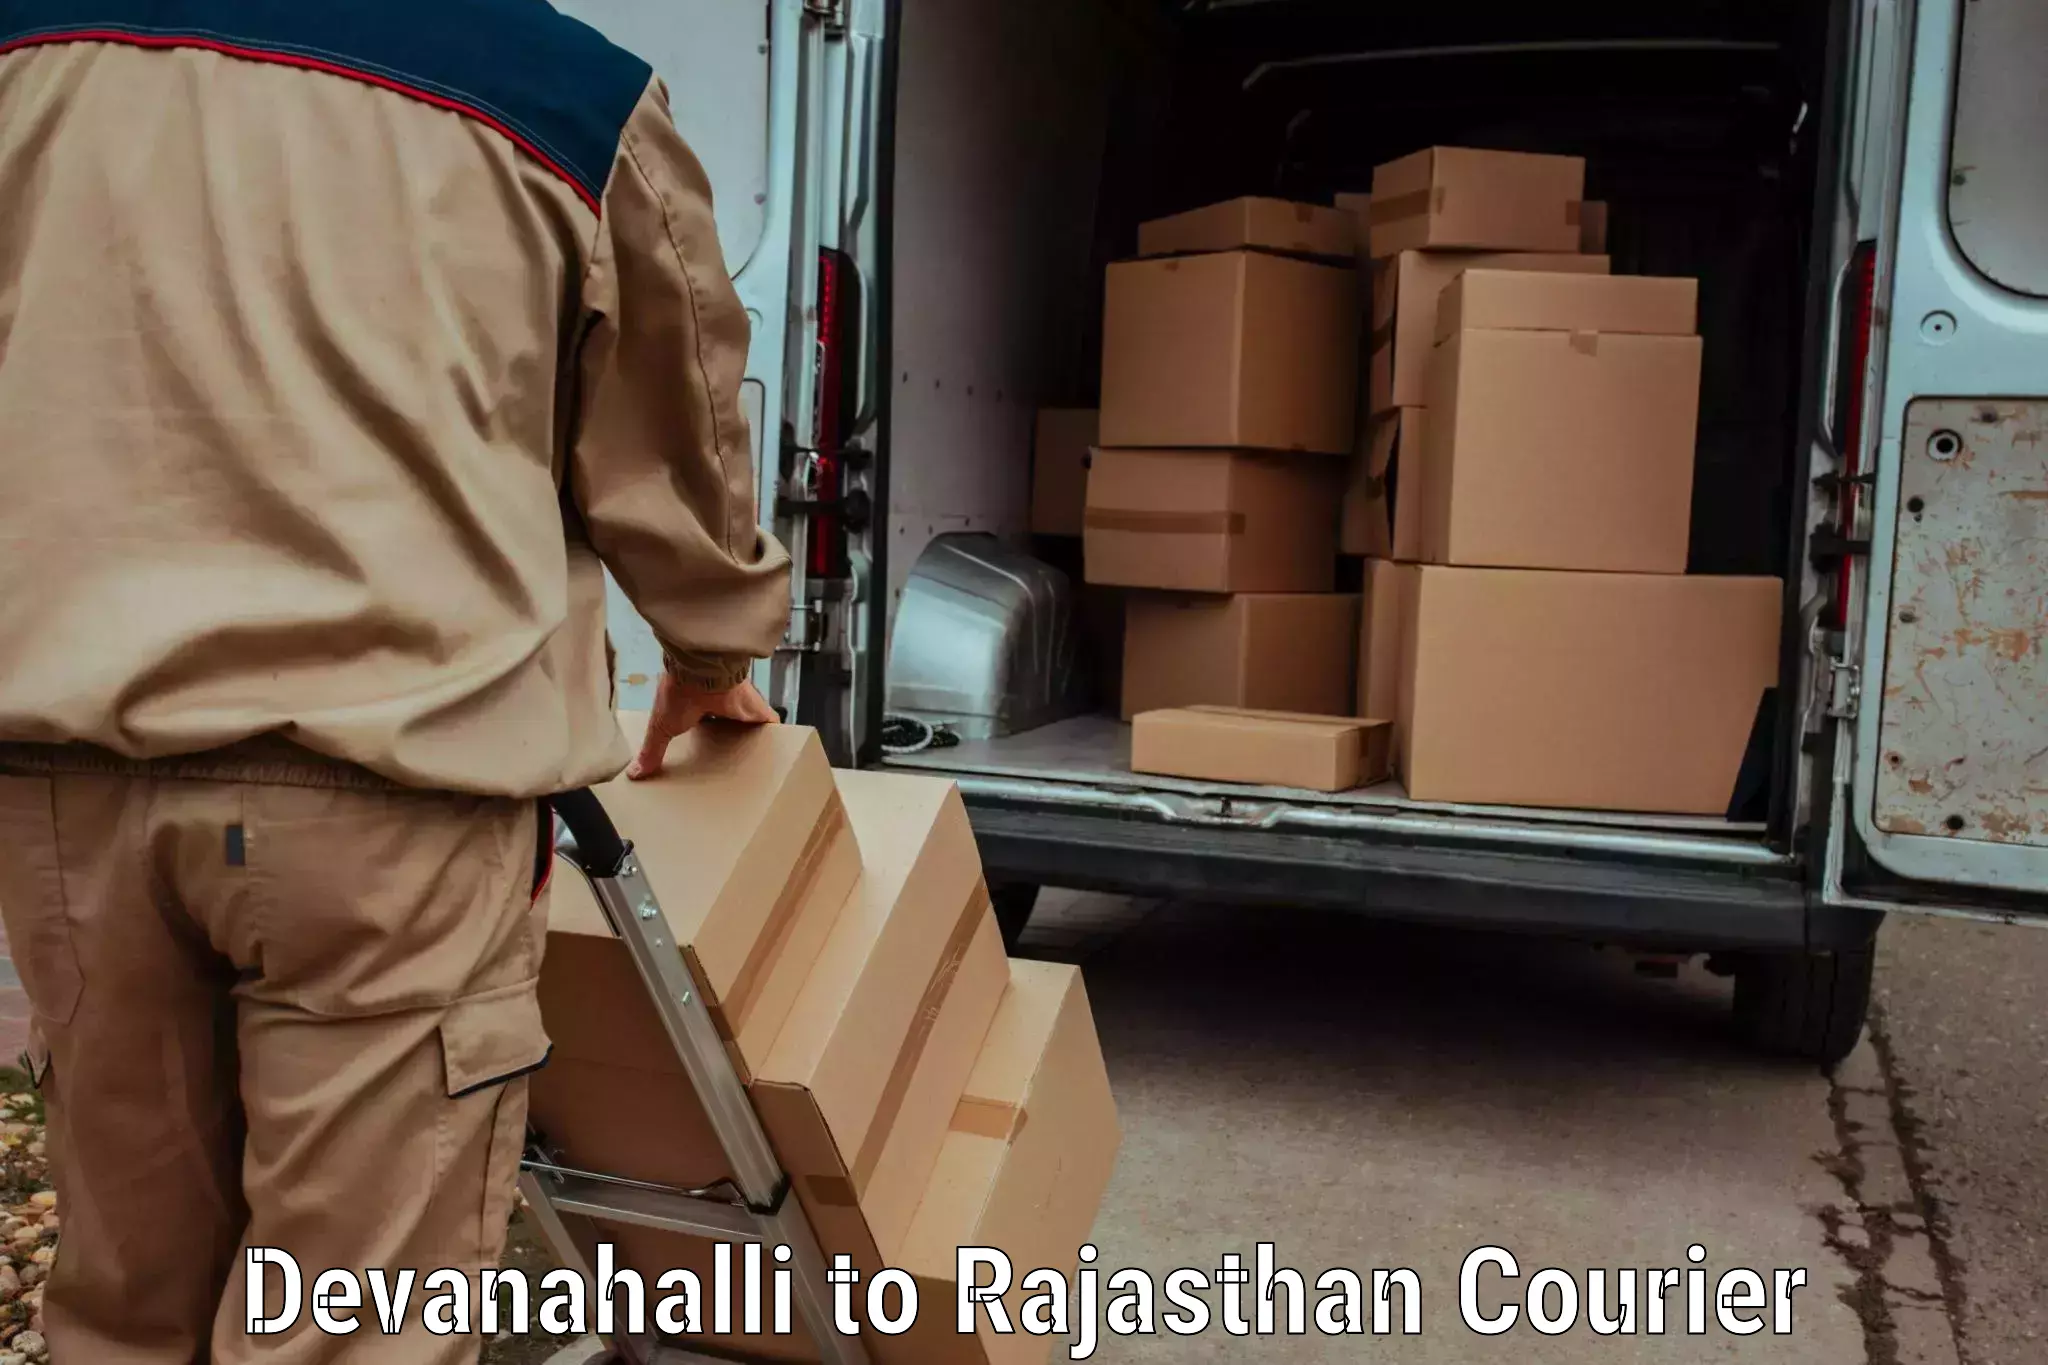 On-demand shipping options Devanahalli to Jhunjhunu